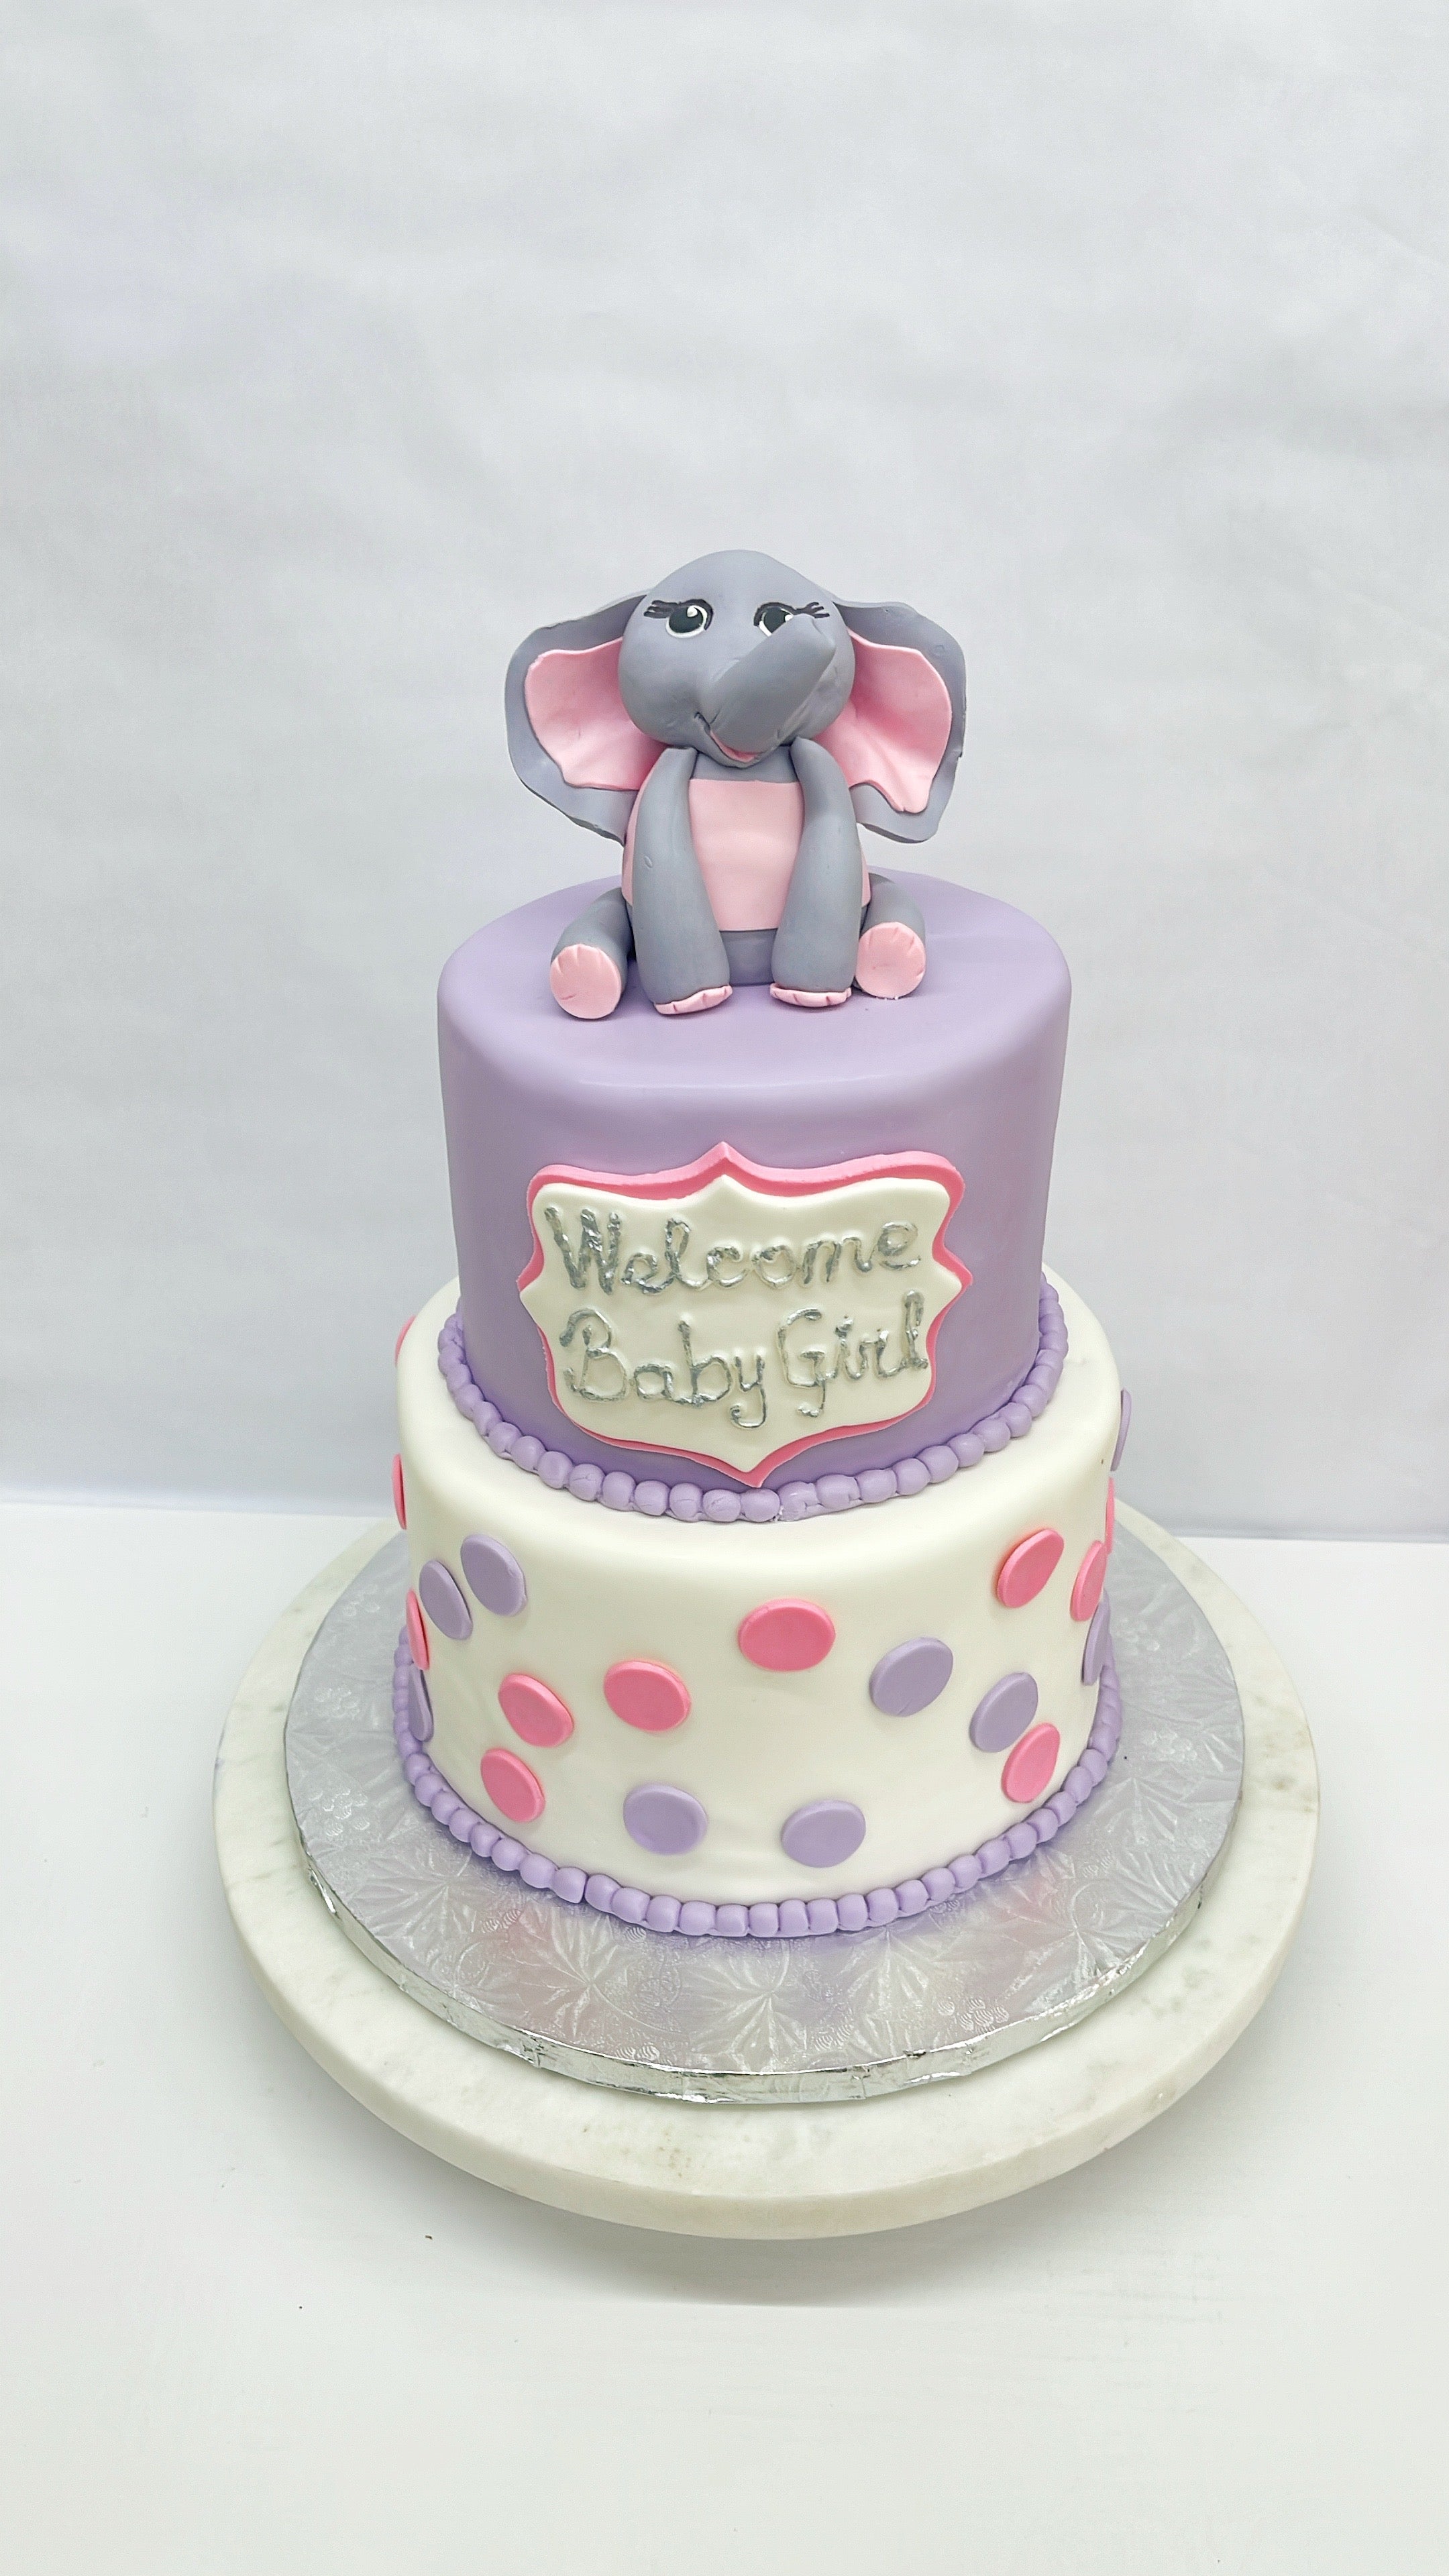 Elephant Fondant Cake